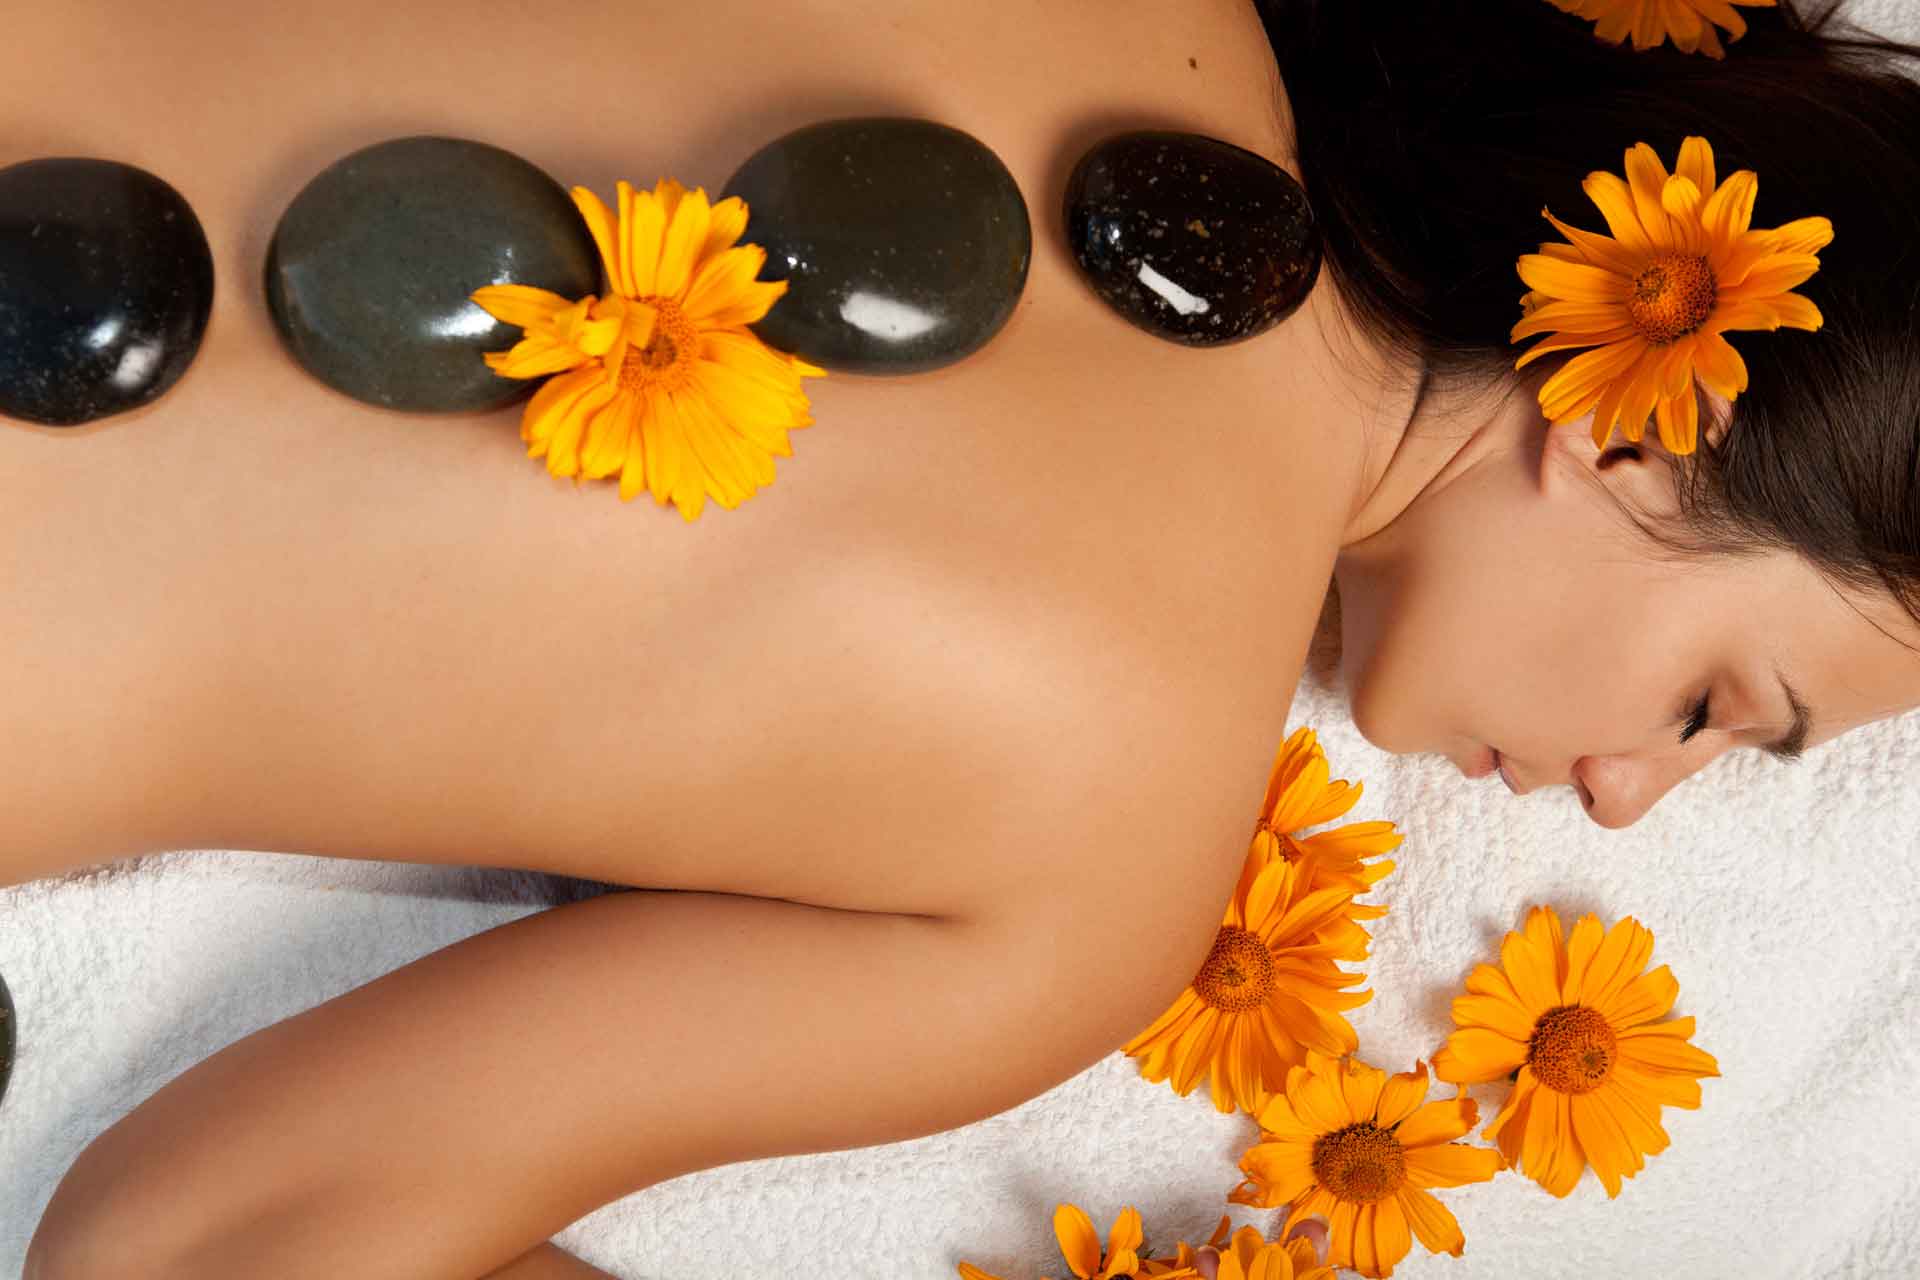 Benefits Of Hot Stone Massage